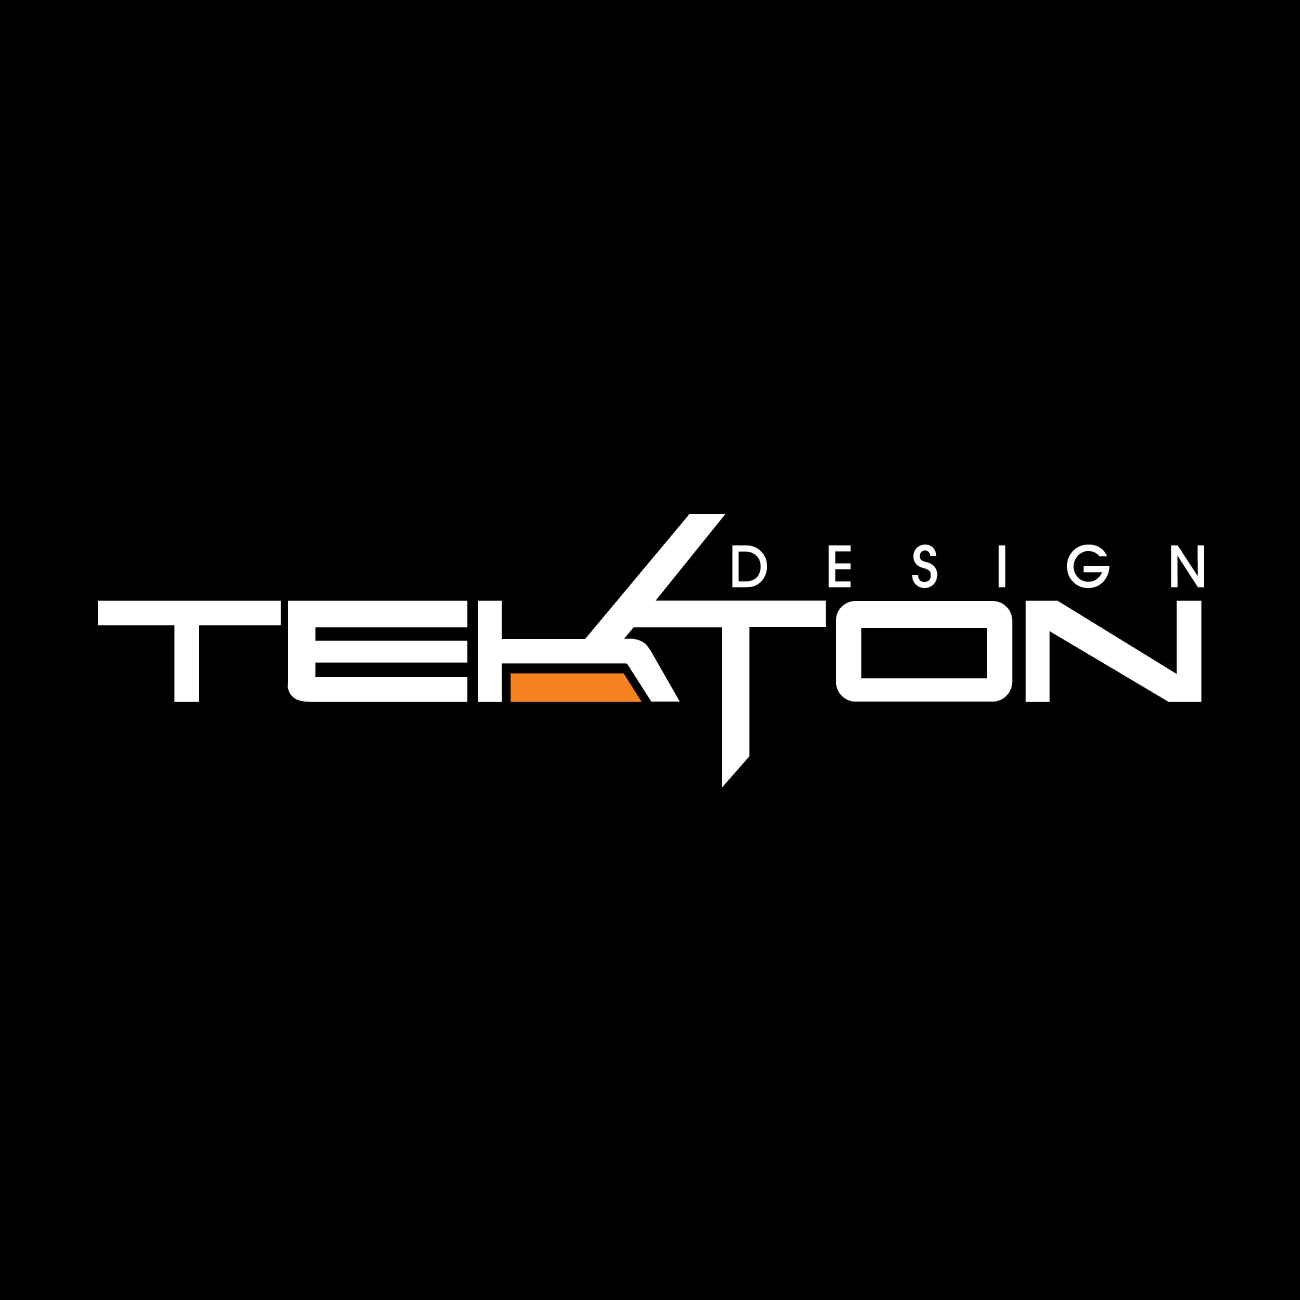 tektondesign.com